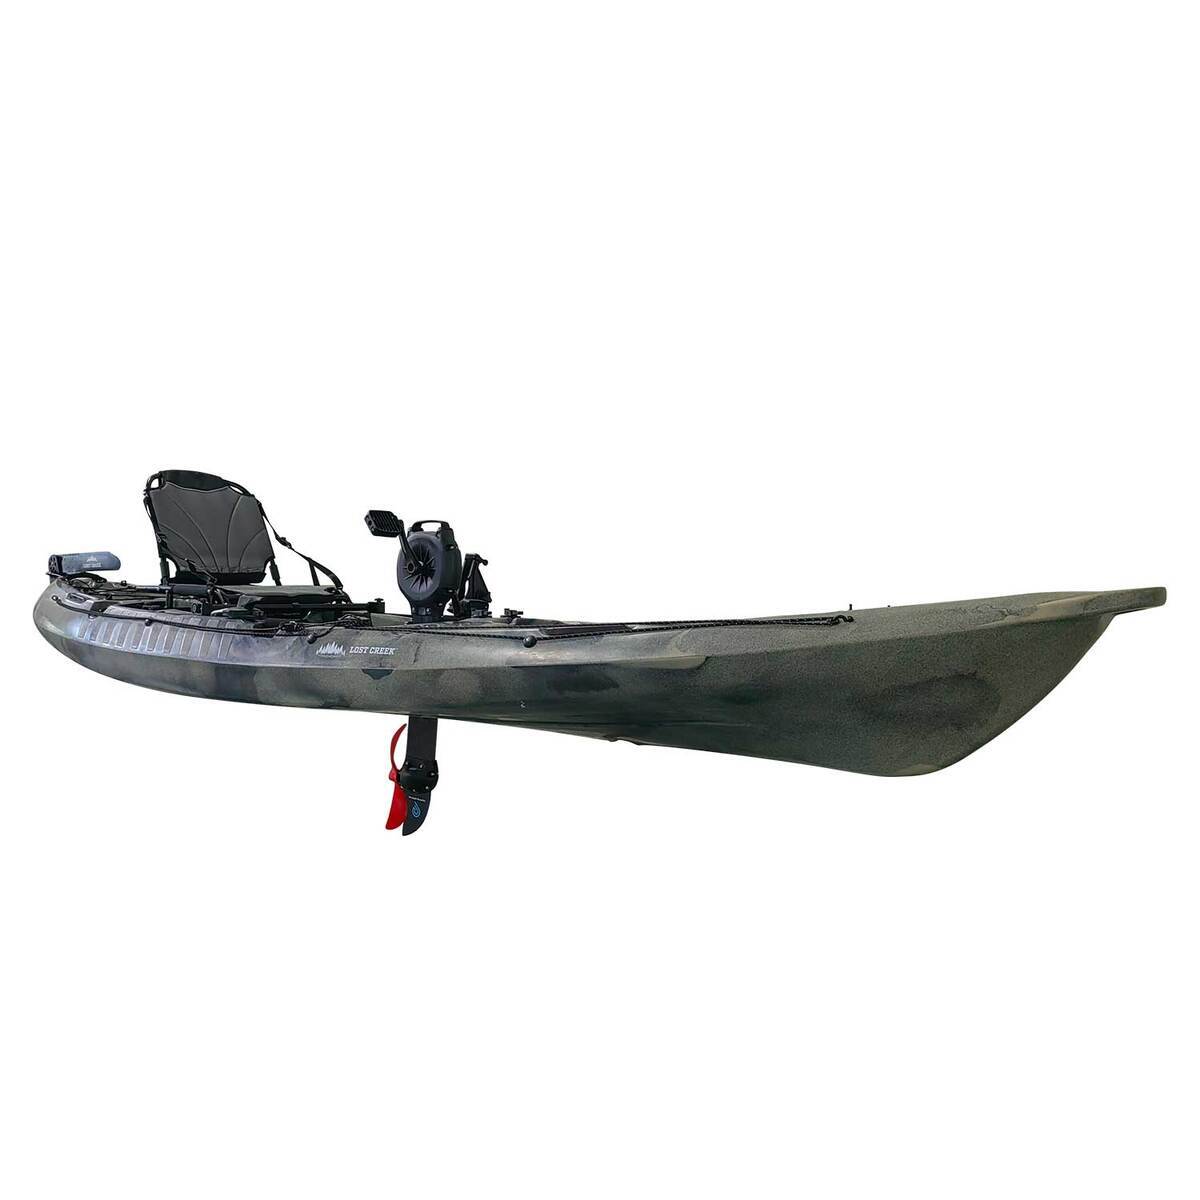 https://www.sportsmans.com/medias/lost-creek-angler-12-sit-on-top-pedal-drive-kayak-124ft-camo-1521728-1.jpg?context=bWFzdGVyfGltYWdlc3w0NDU5OXxpbWFnZS9qcGVnfGFHUXpMMmcyT1M4eE1UTTBOekEyT0RVeE9EUXpNQzh4TWpBd0xXTnZiblpsY25OcGIyNUdiM0p0WVhSZlltRnpaUzFqYjI1MlpYSnphVzl1Um05eWJXRjBYM050ZHkweE5USXhOekk0TFRFdWFuQm58ZmI5NDNlMjgyYTEzNDBlNTU1NTUzMGMwNmMwNzUxNzRjNzhjNzk4ZjYzYzRjZWU5MzI5NzIxNTE2NjJjNTkxYQ